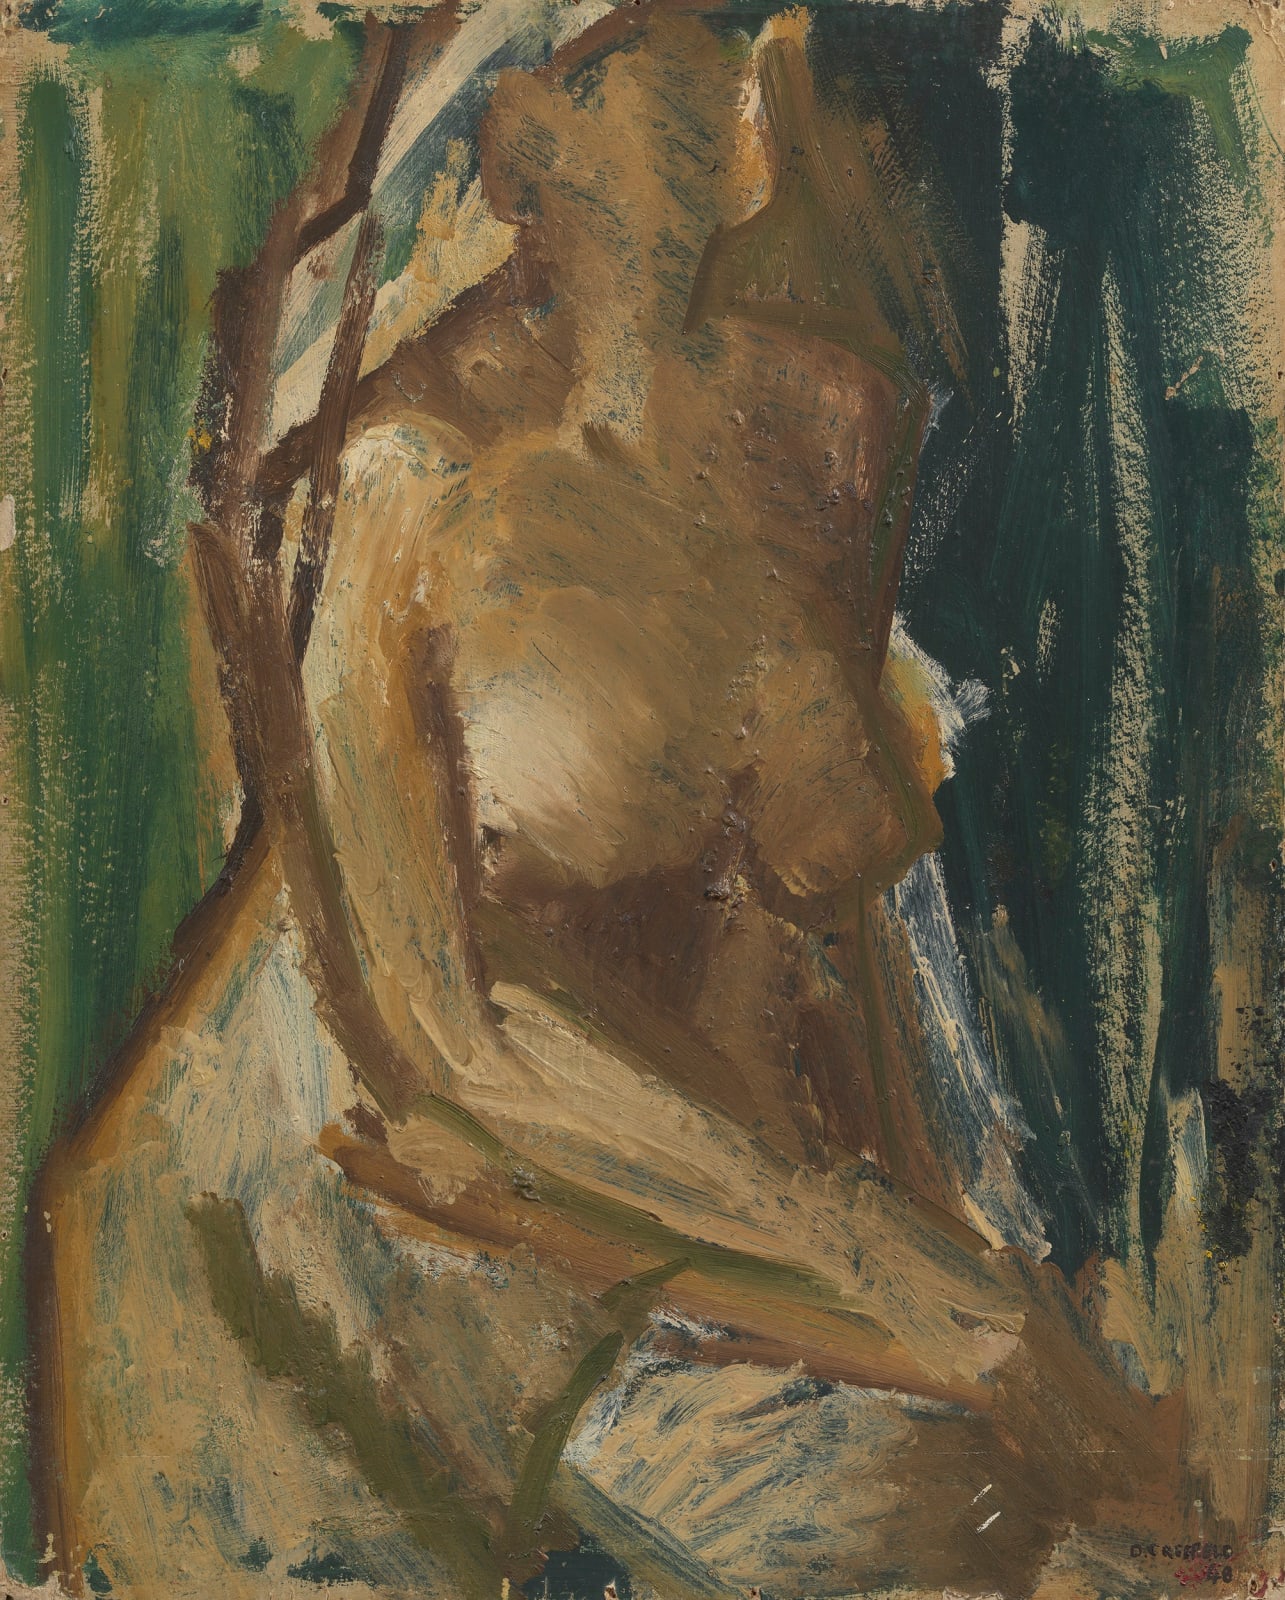 Dennis Creffield, Nude Study, 1948